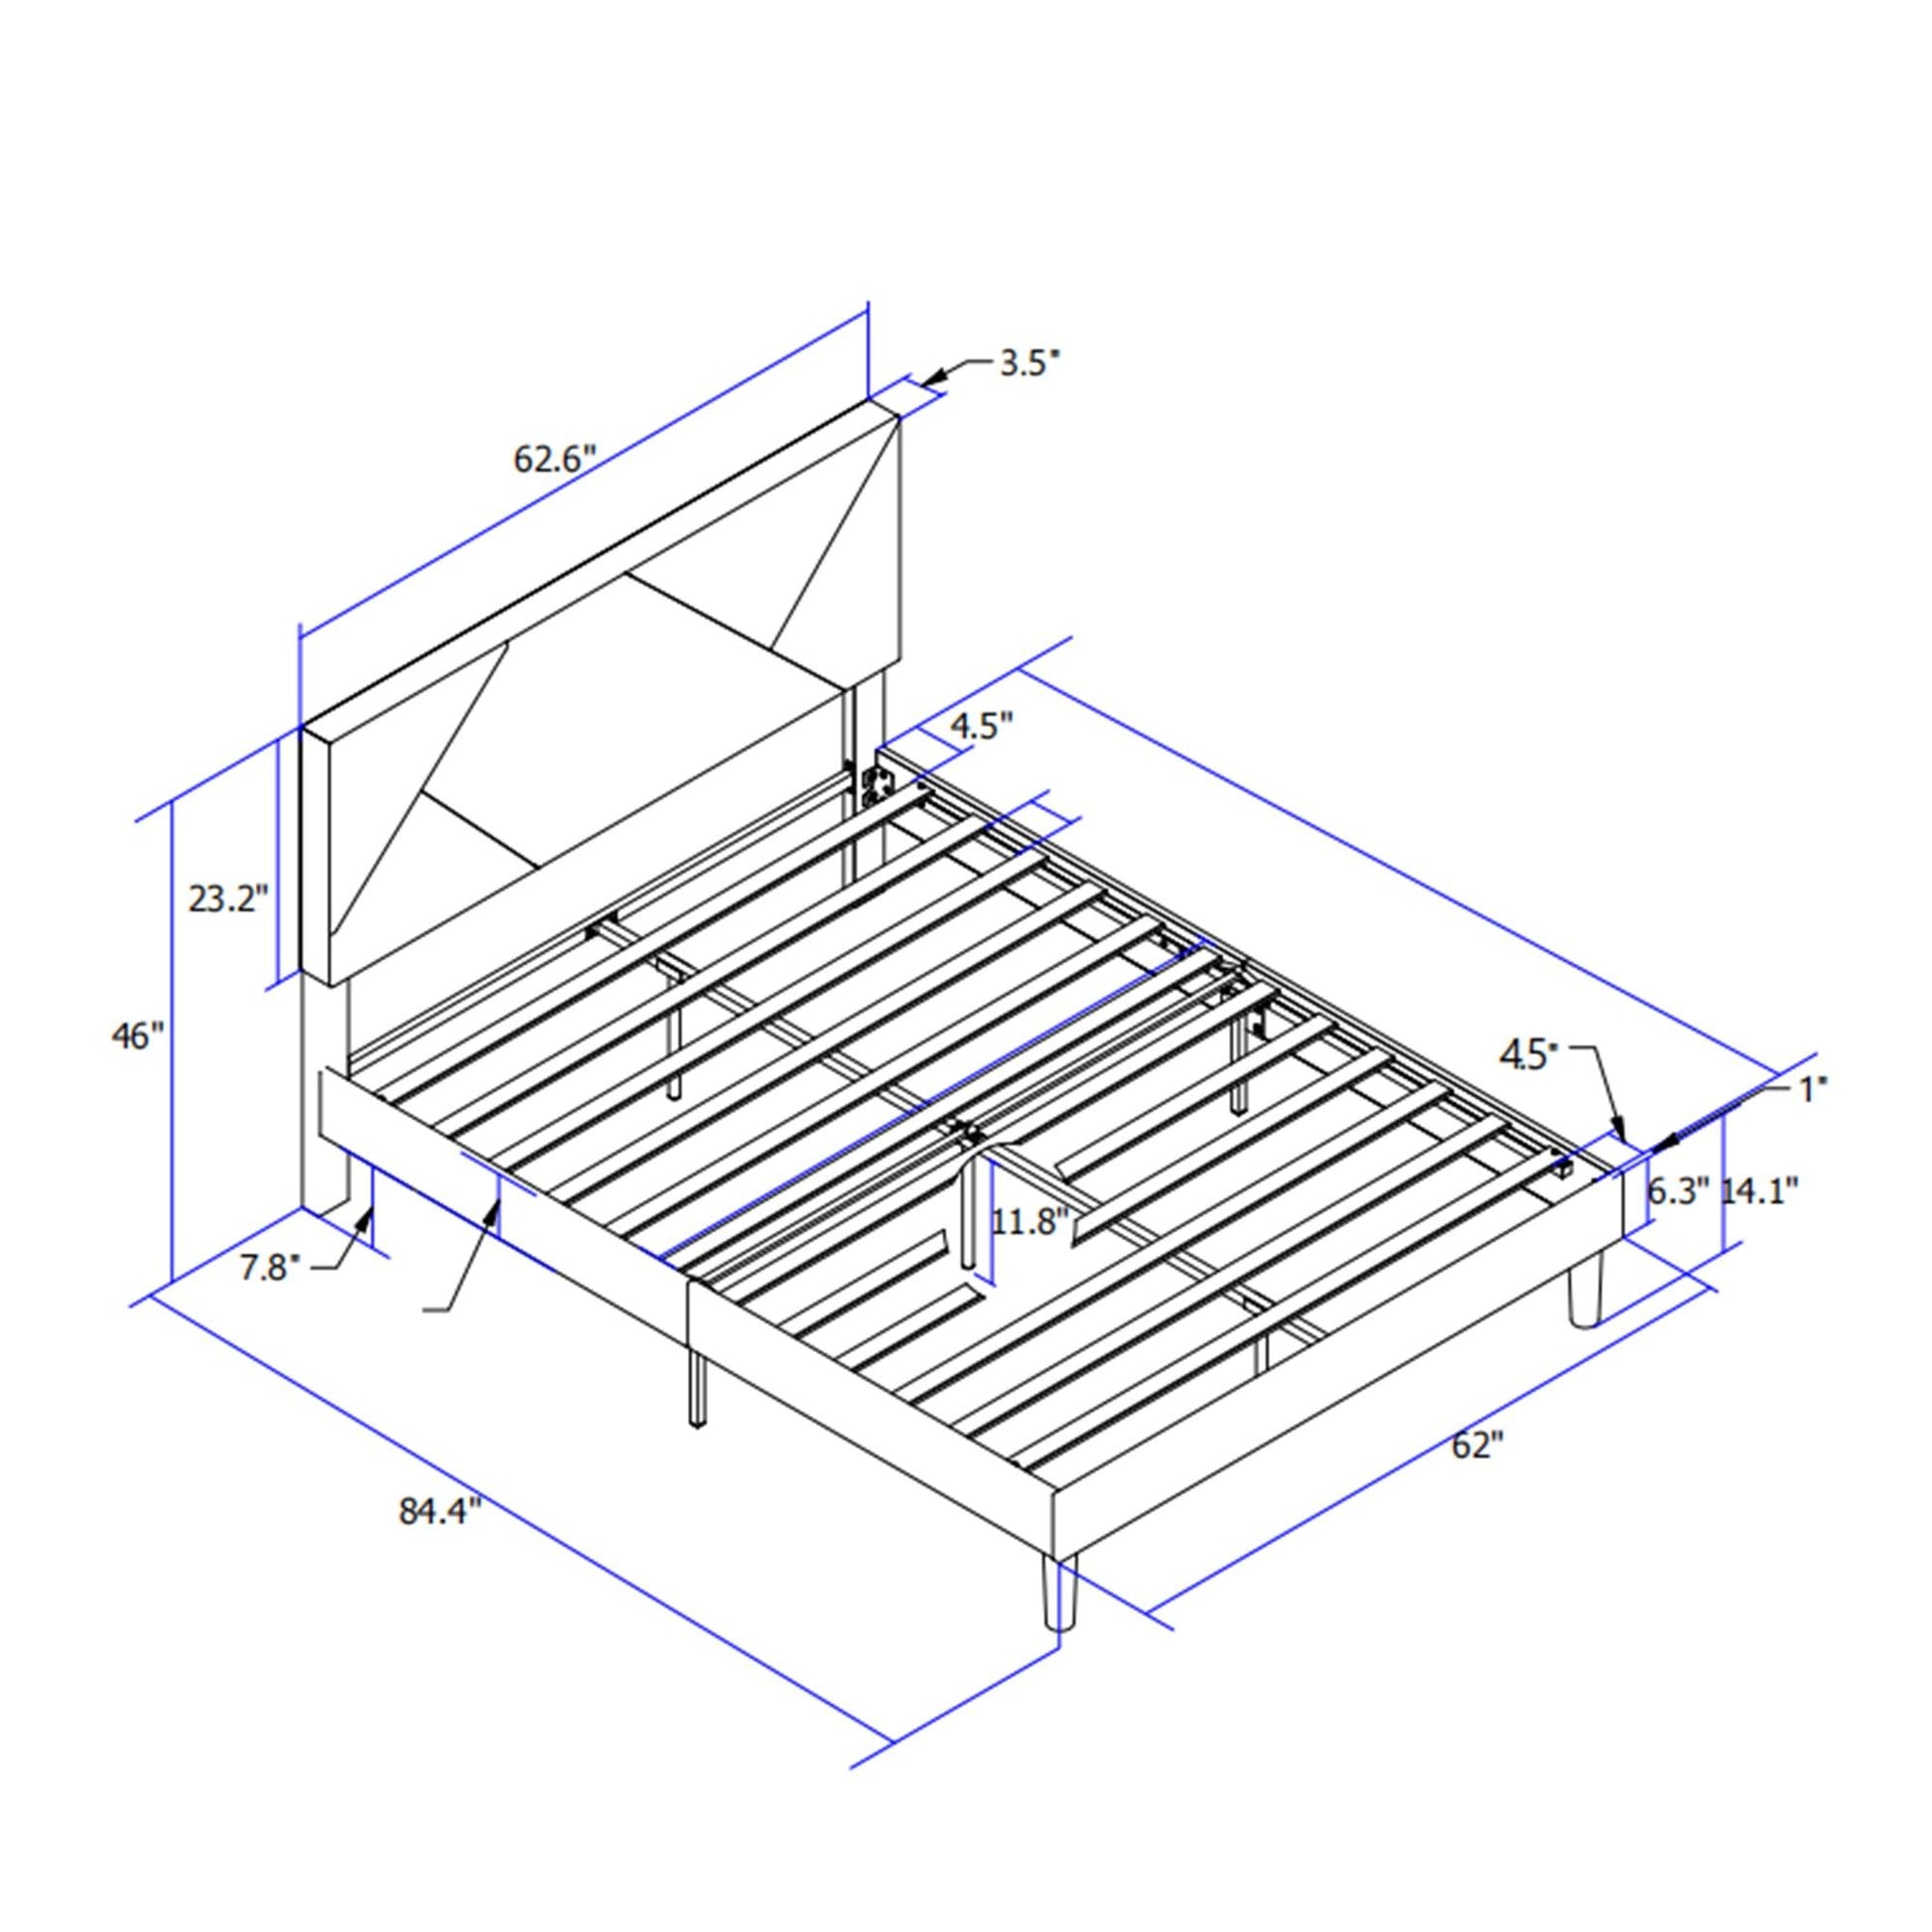 Queen Size Upholstered Platform Bed Frame Wood Slat Support Grey - FurniFindUSA